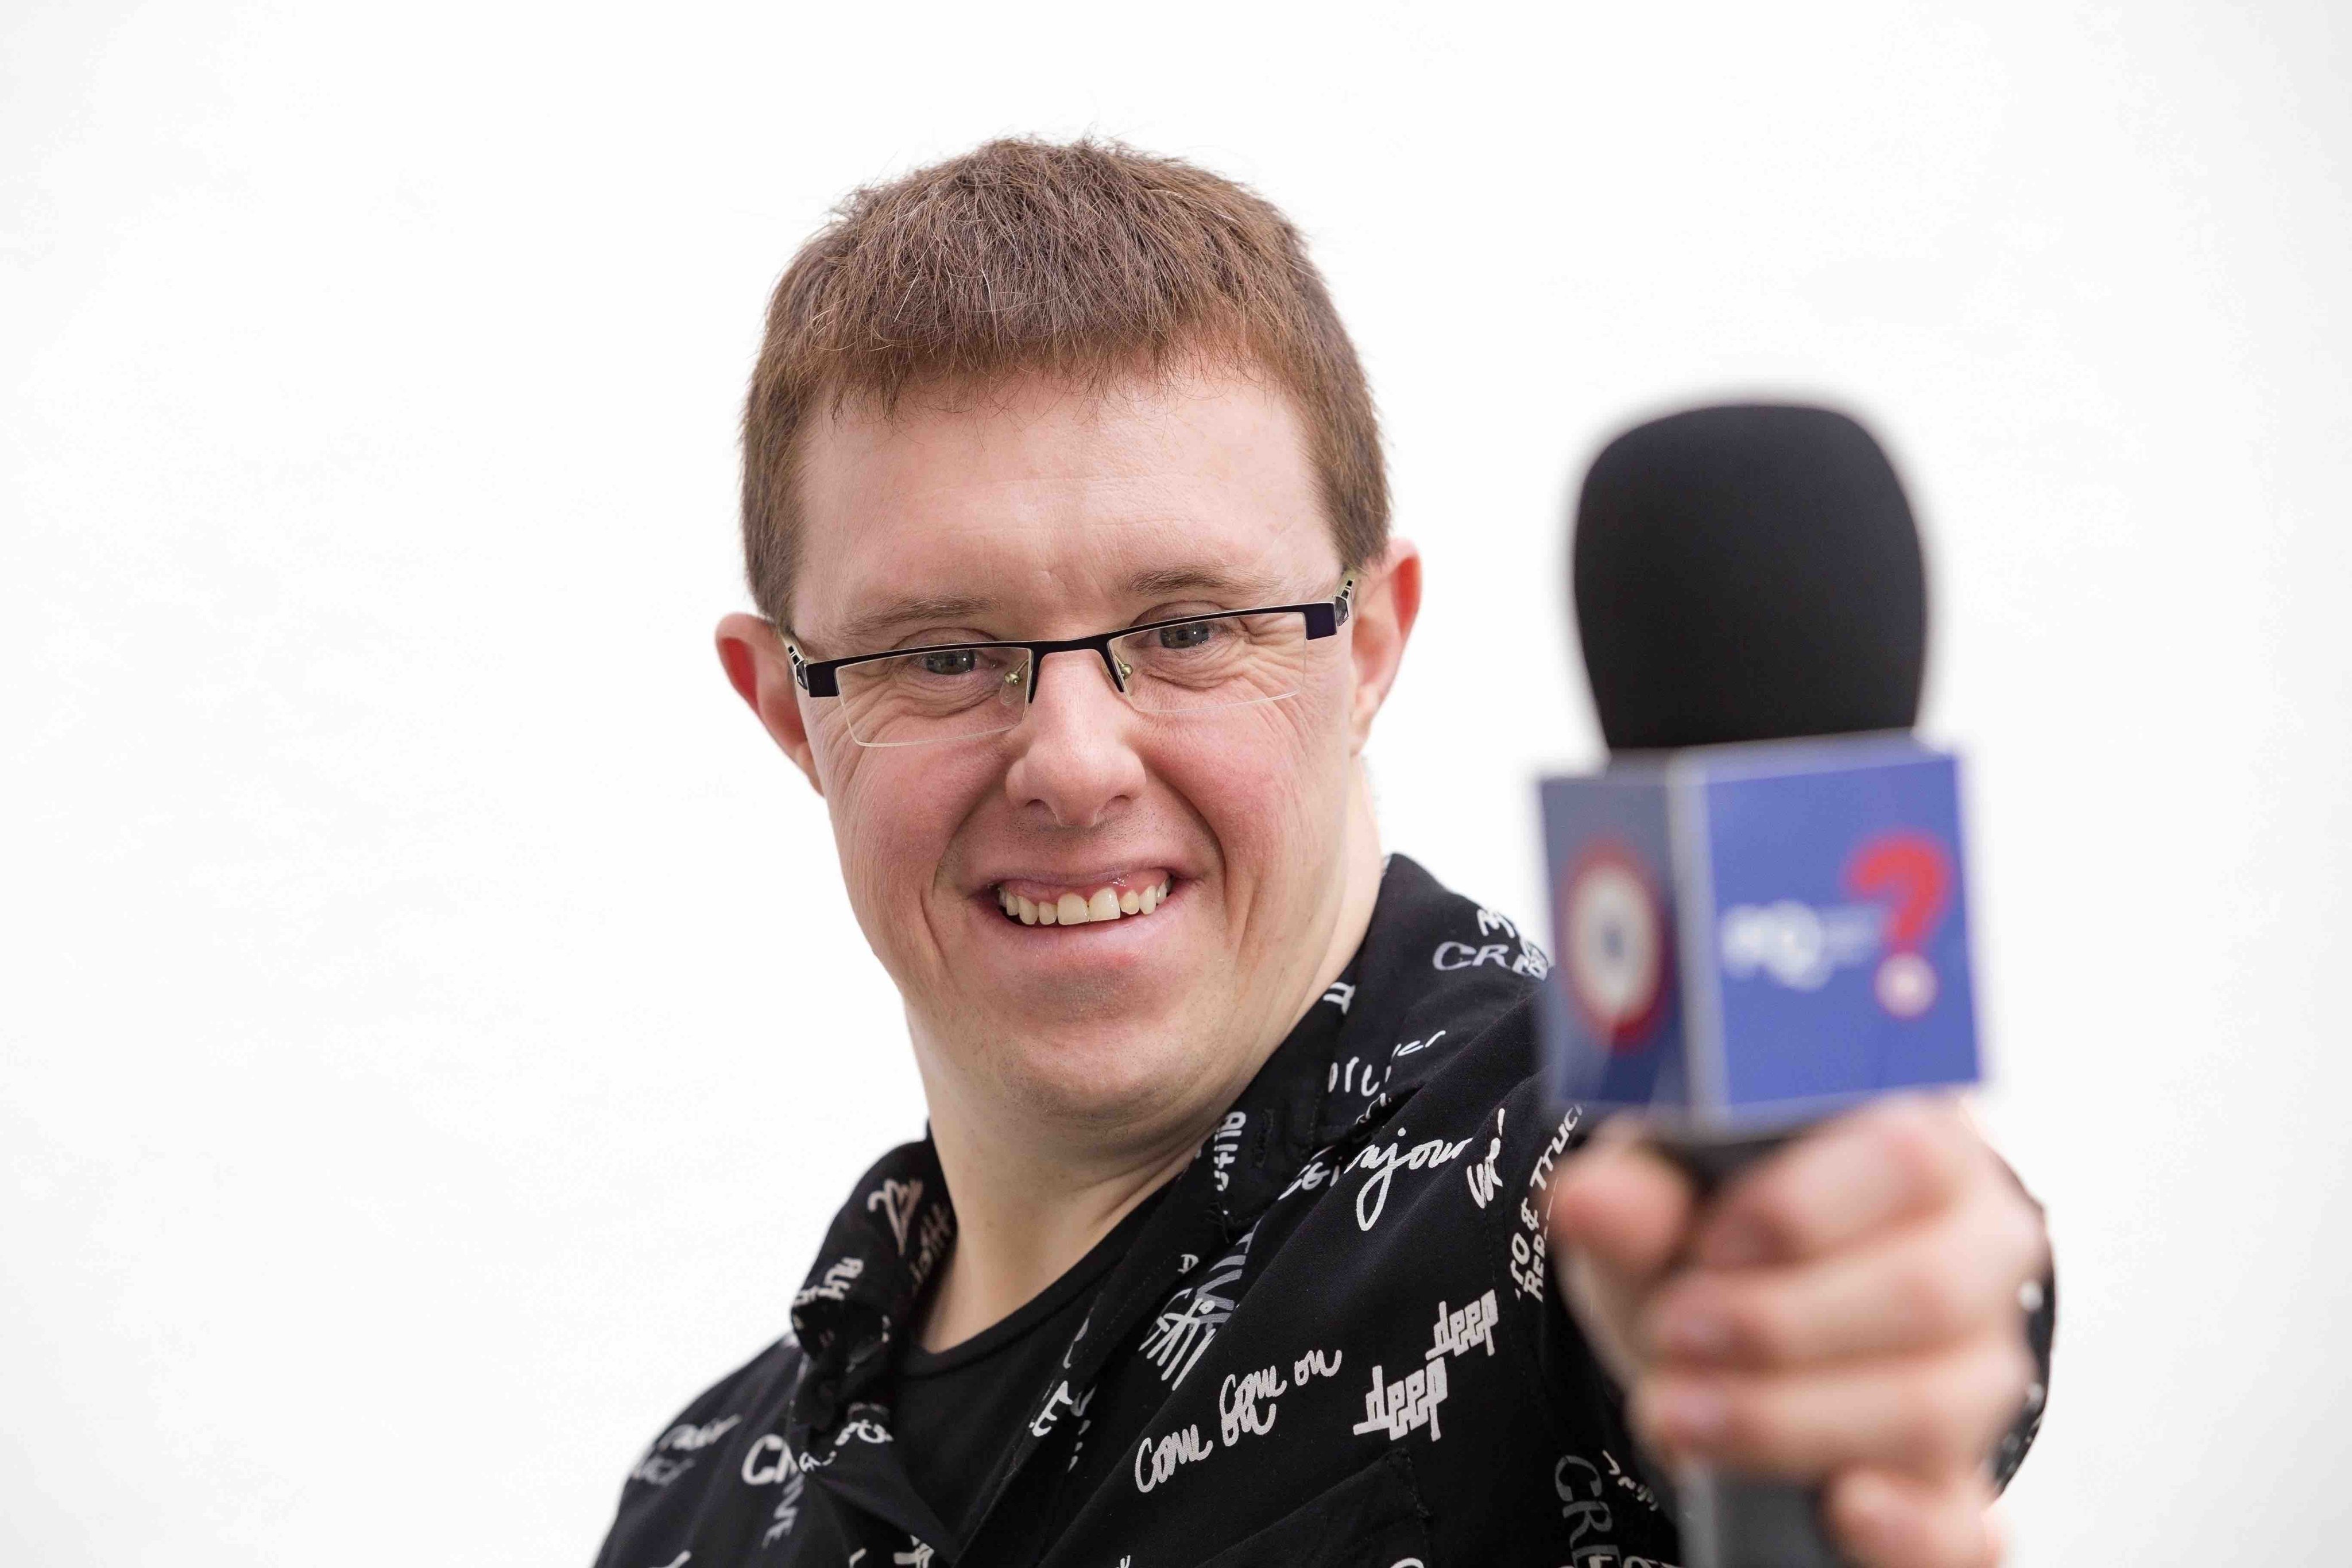 Eloi Collell, el presentador amb síndrome de Down que fa història a TV3